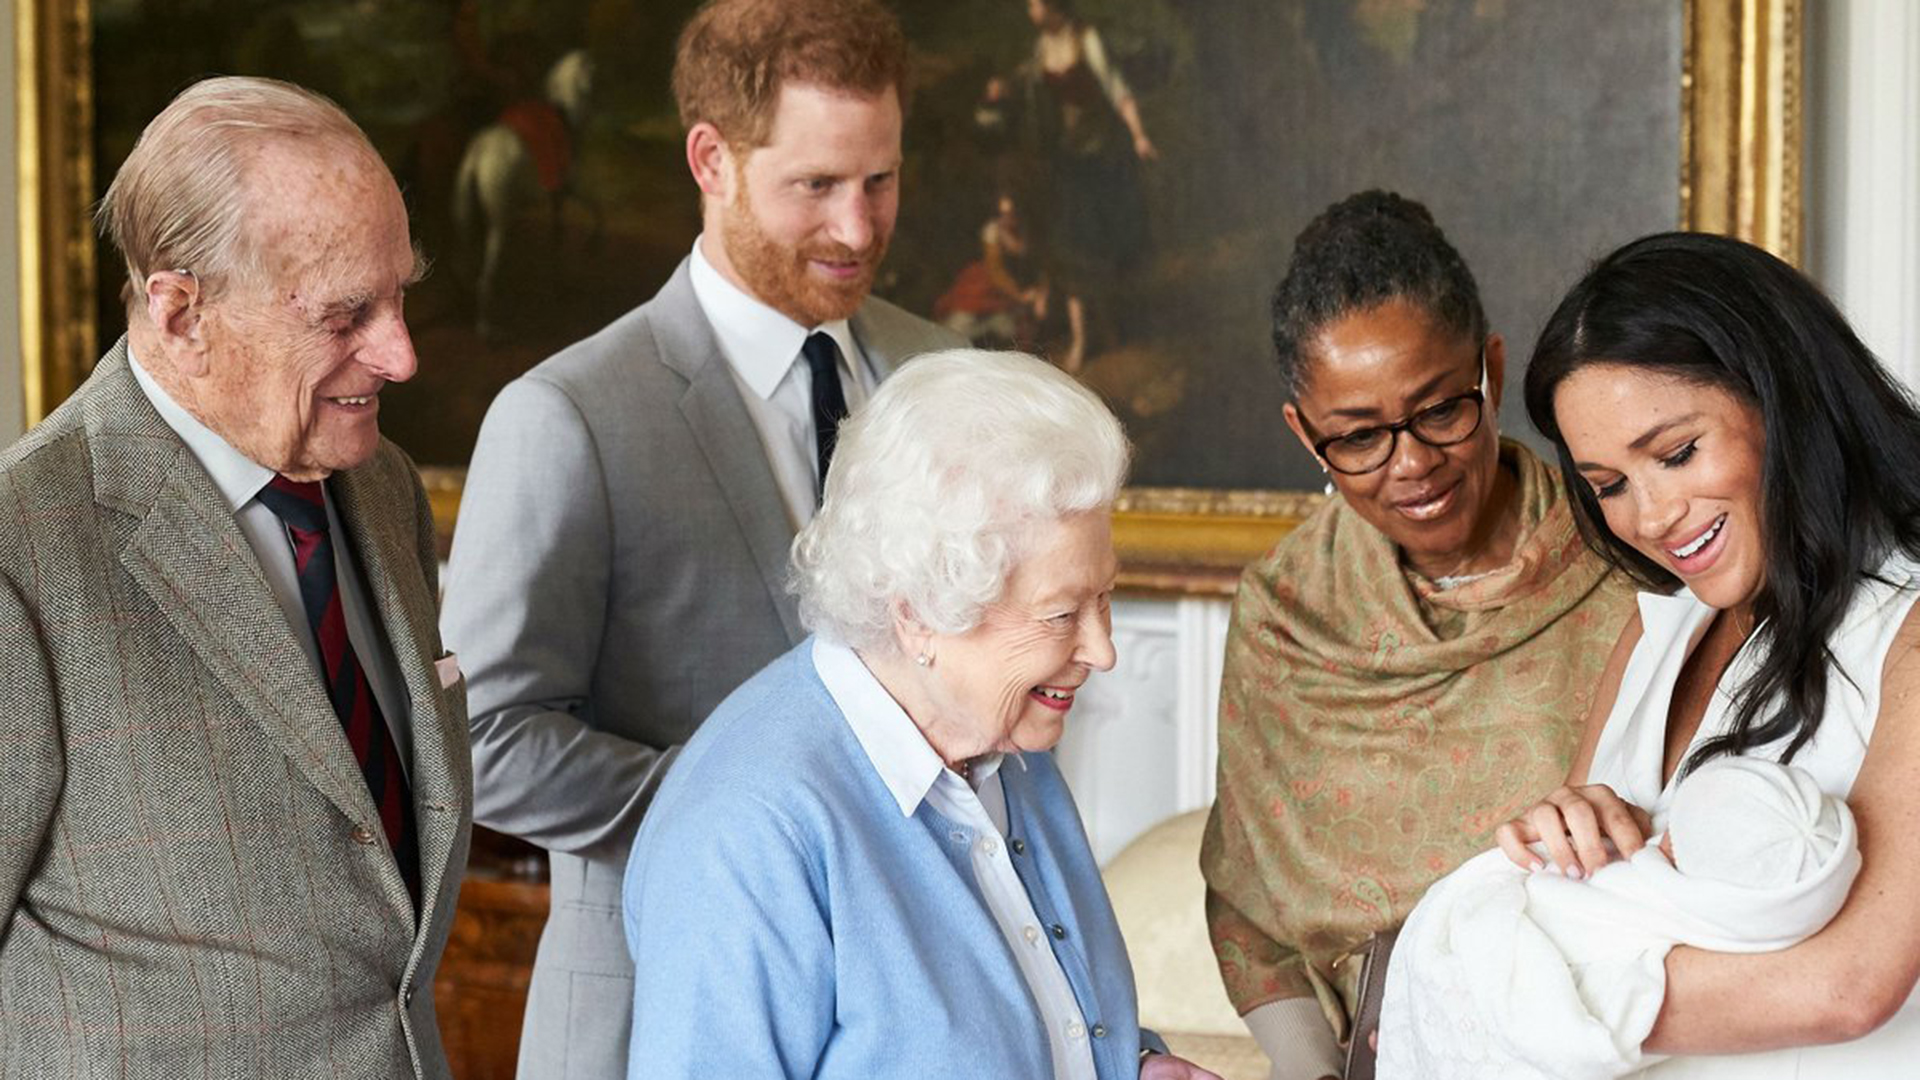 La reina Isabel II, Felipe de Edimburgo y la madre de Meghan Markle mirando a Archie Harrison Mountbatten-Windsor, hijo de los duques de Sussex
